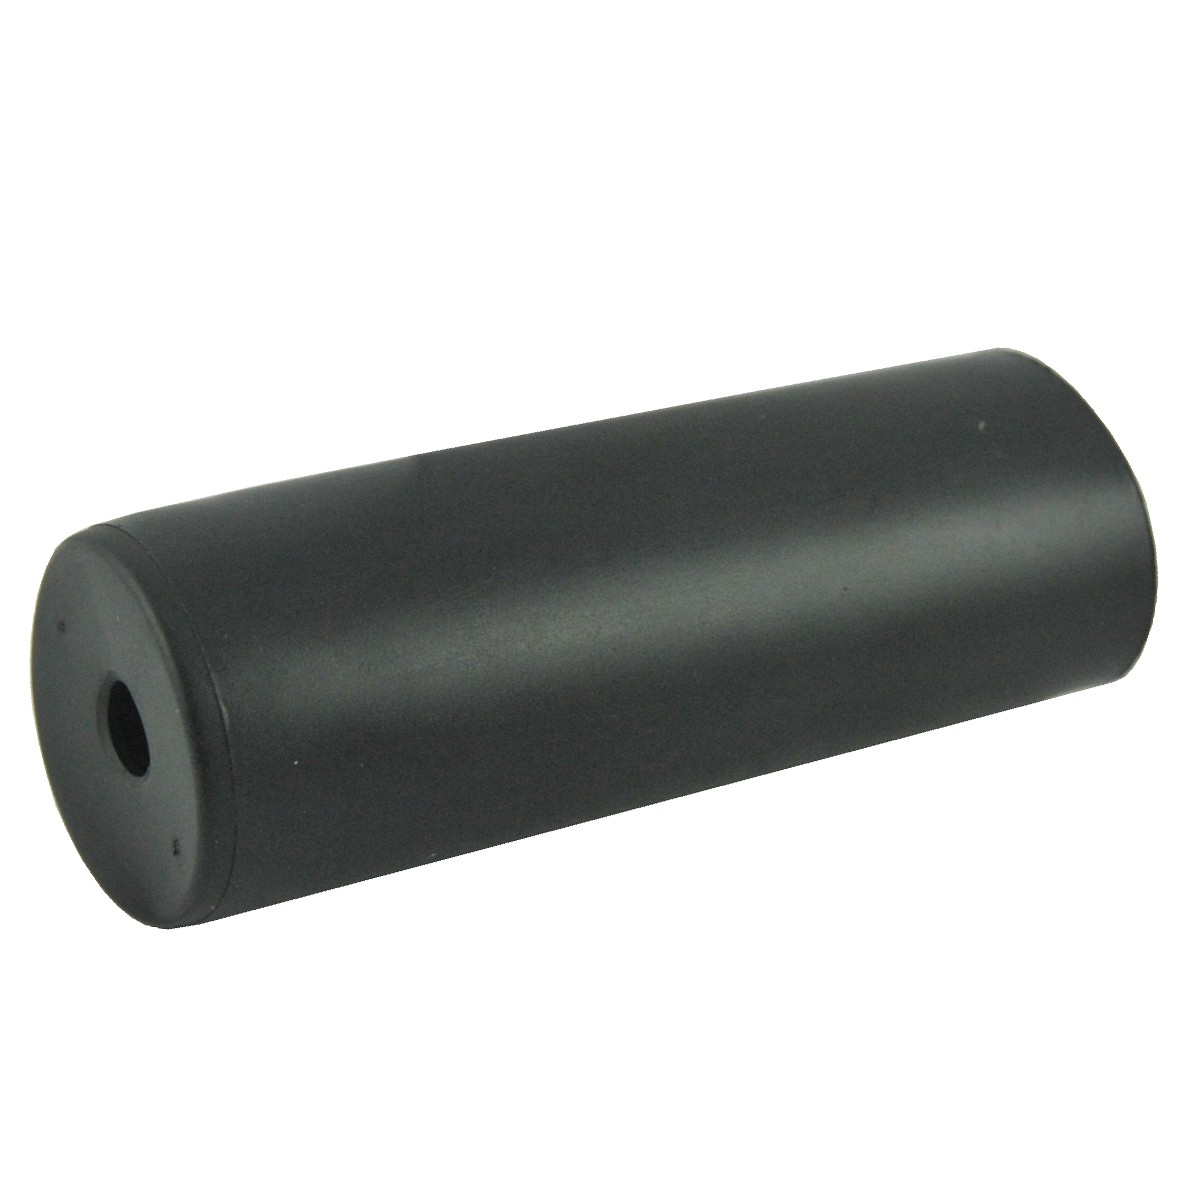 Shaft rubber cover WOM / PTO / LS XJ25 / LS MT1.25 / LS MT3.35 / LS MT3.40 / LS MT3.50 / LS MT3.60 / 3A5102349 / 40061193